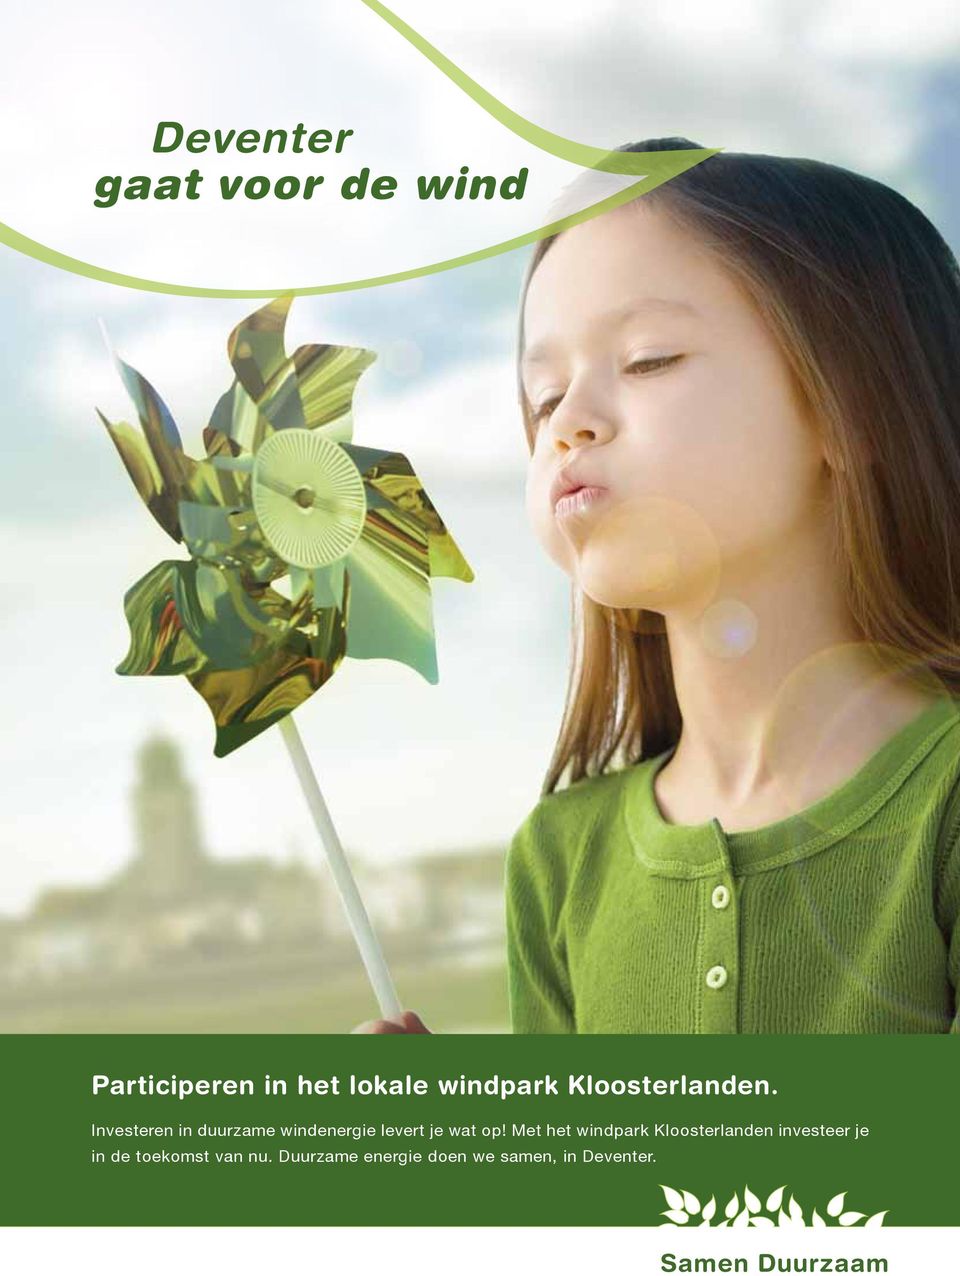 Met het windpark Kloosterlanden investeer je in de toekomst van nu.